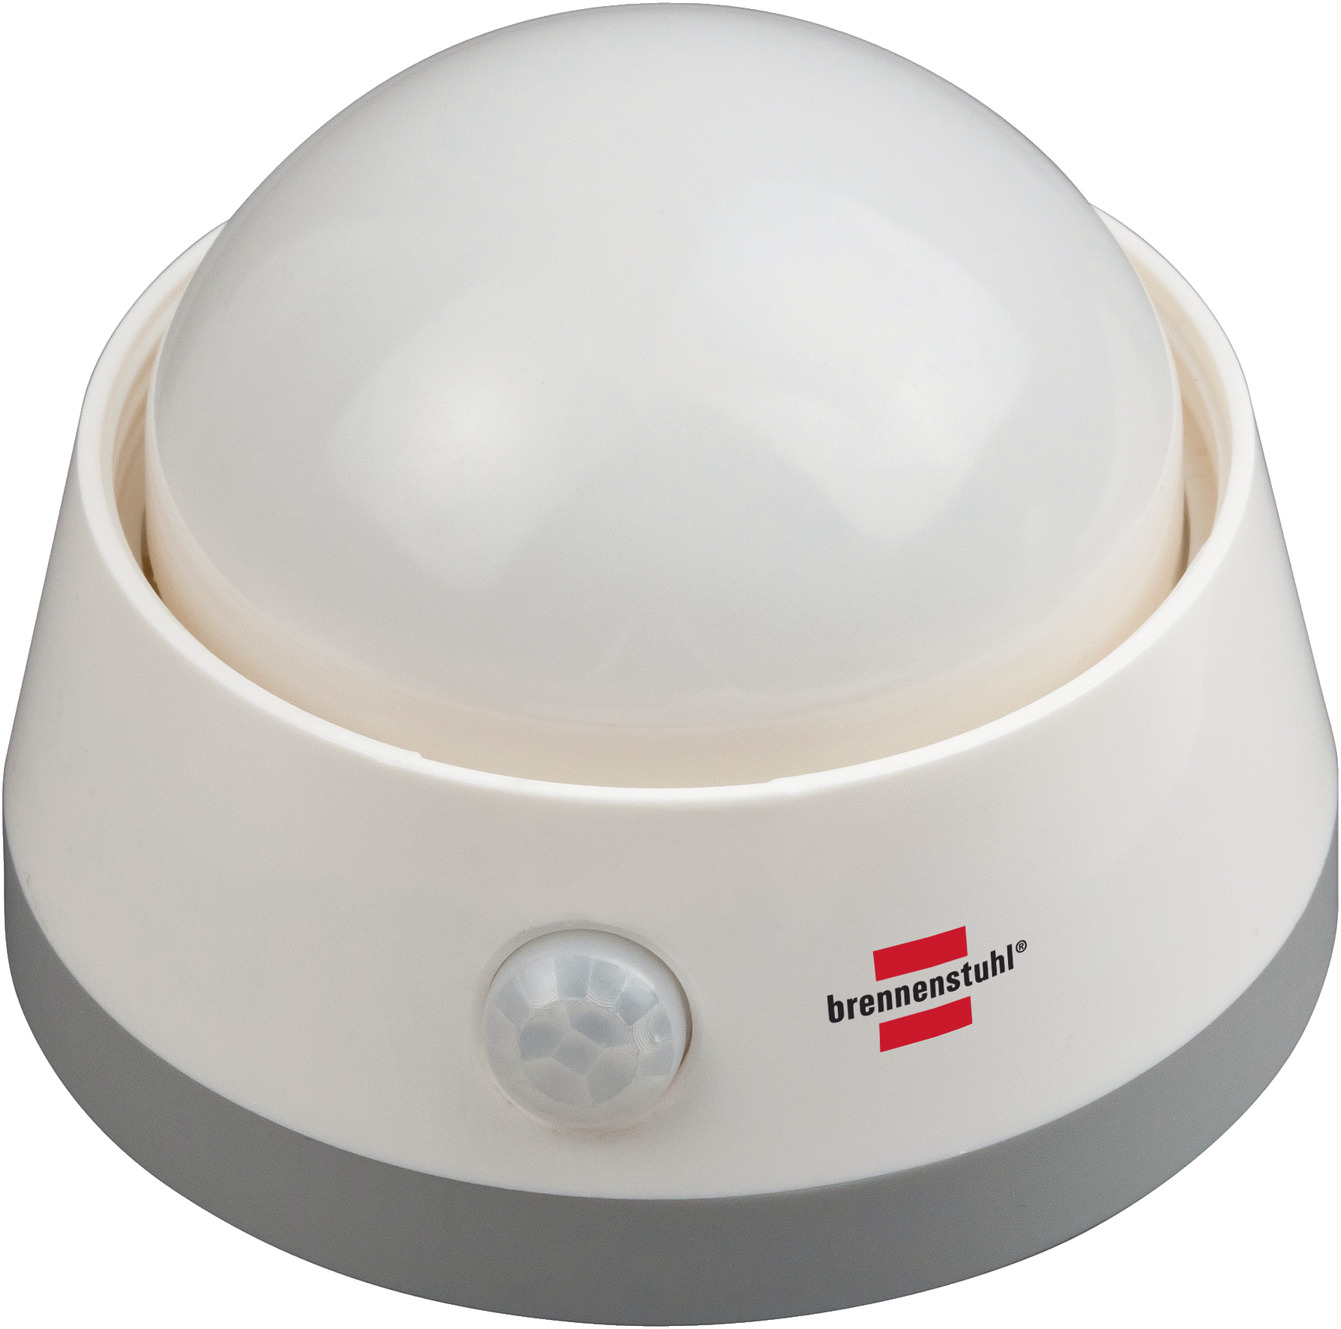 Batterie LED-Nachtlicht mit Infrarot-Bewegungsmelder Push-Schalter und | brennenstuhl®